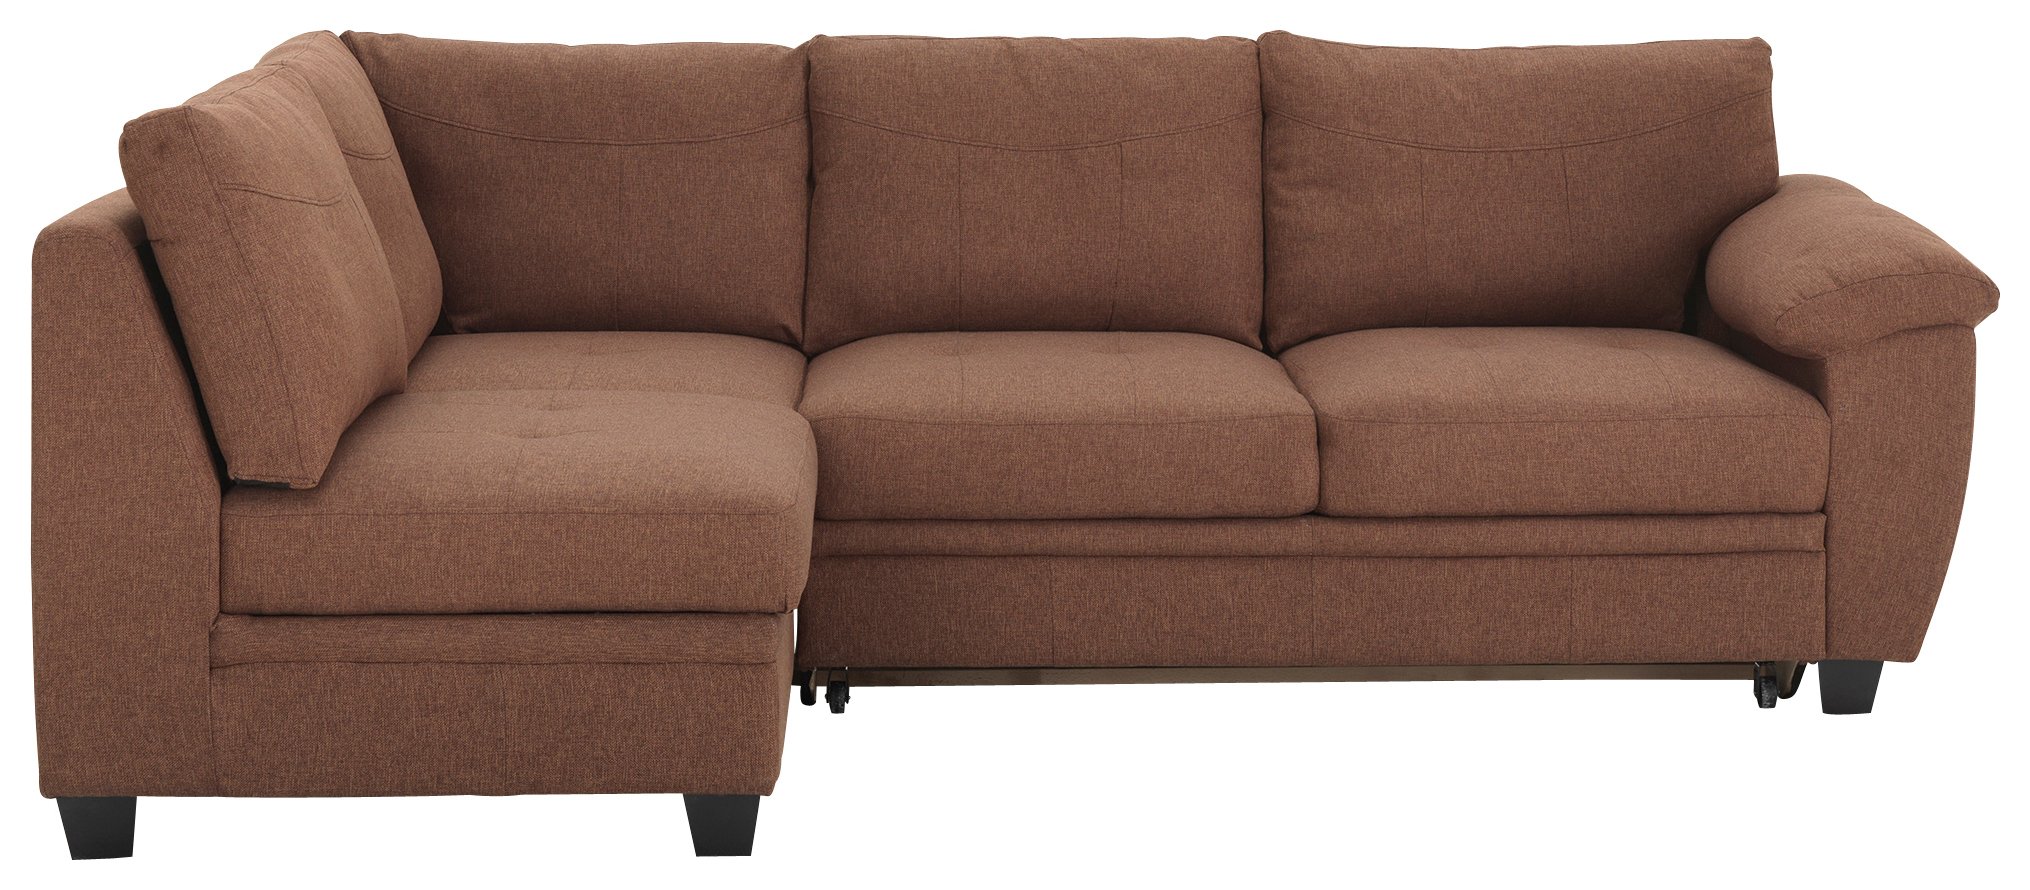 cheap sofa beds argos